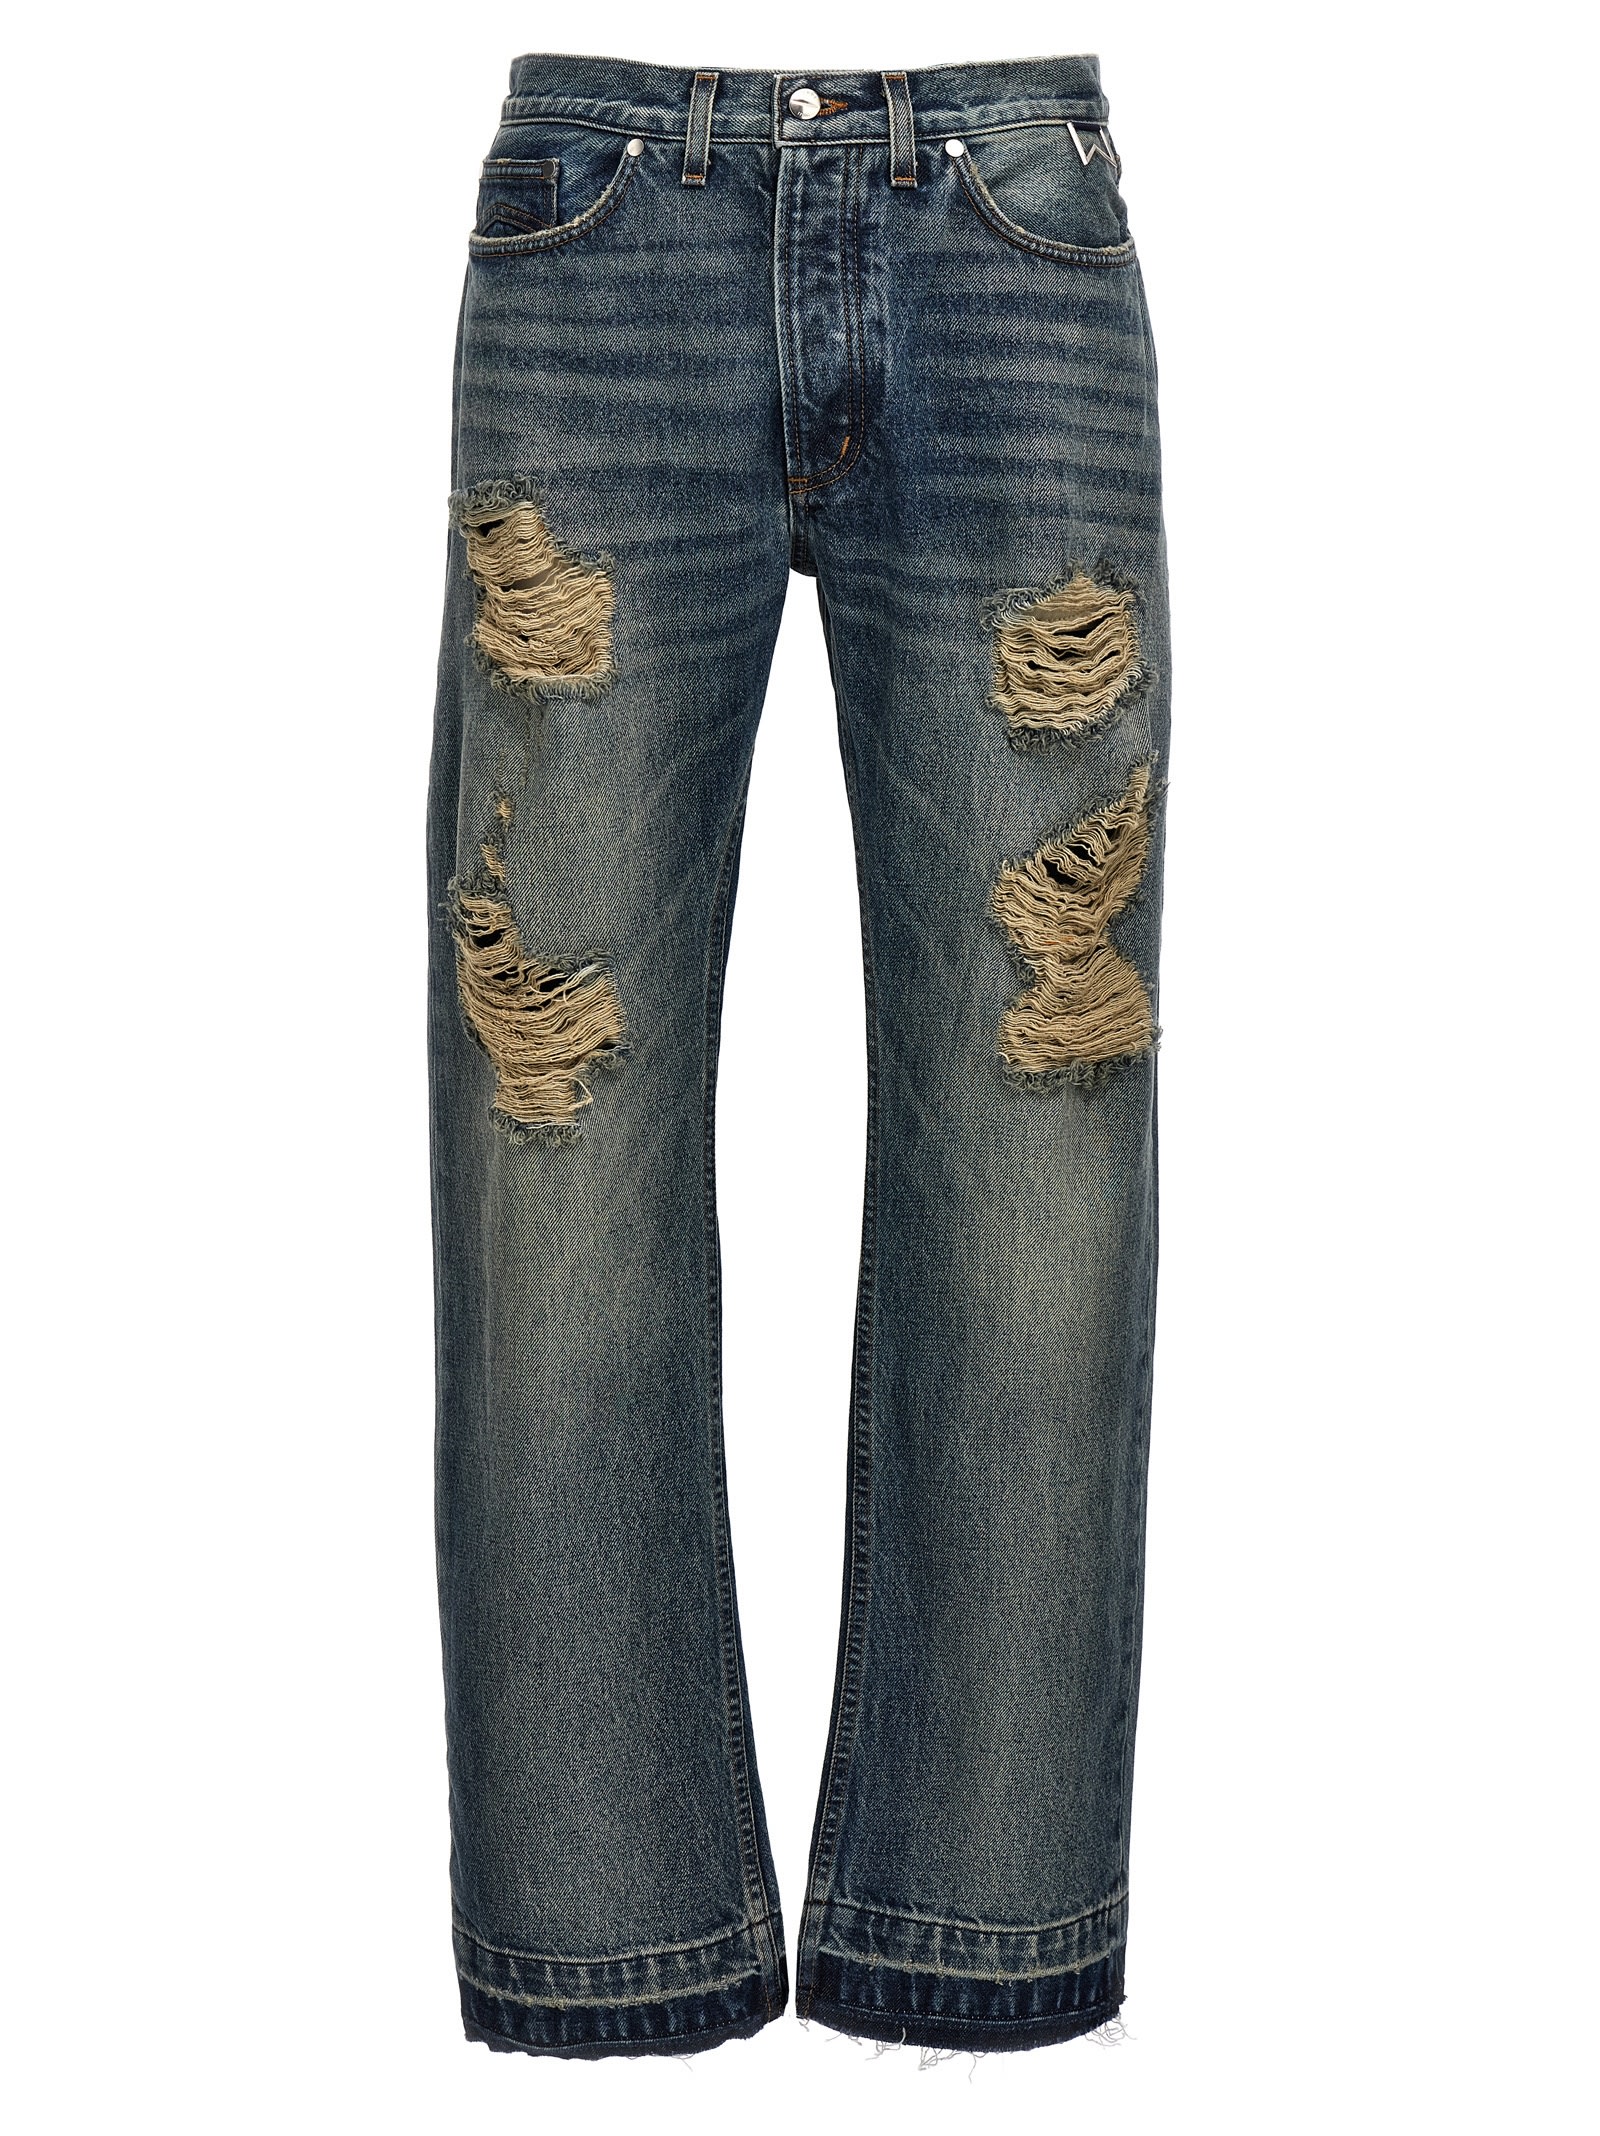 Rhude beach Bum Jeans